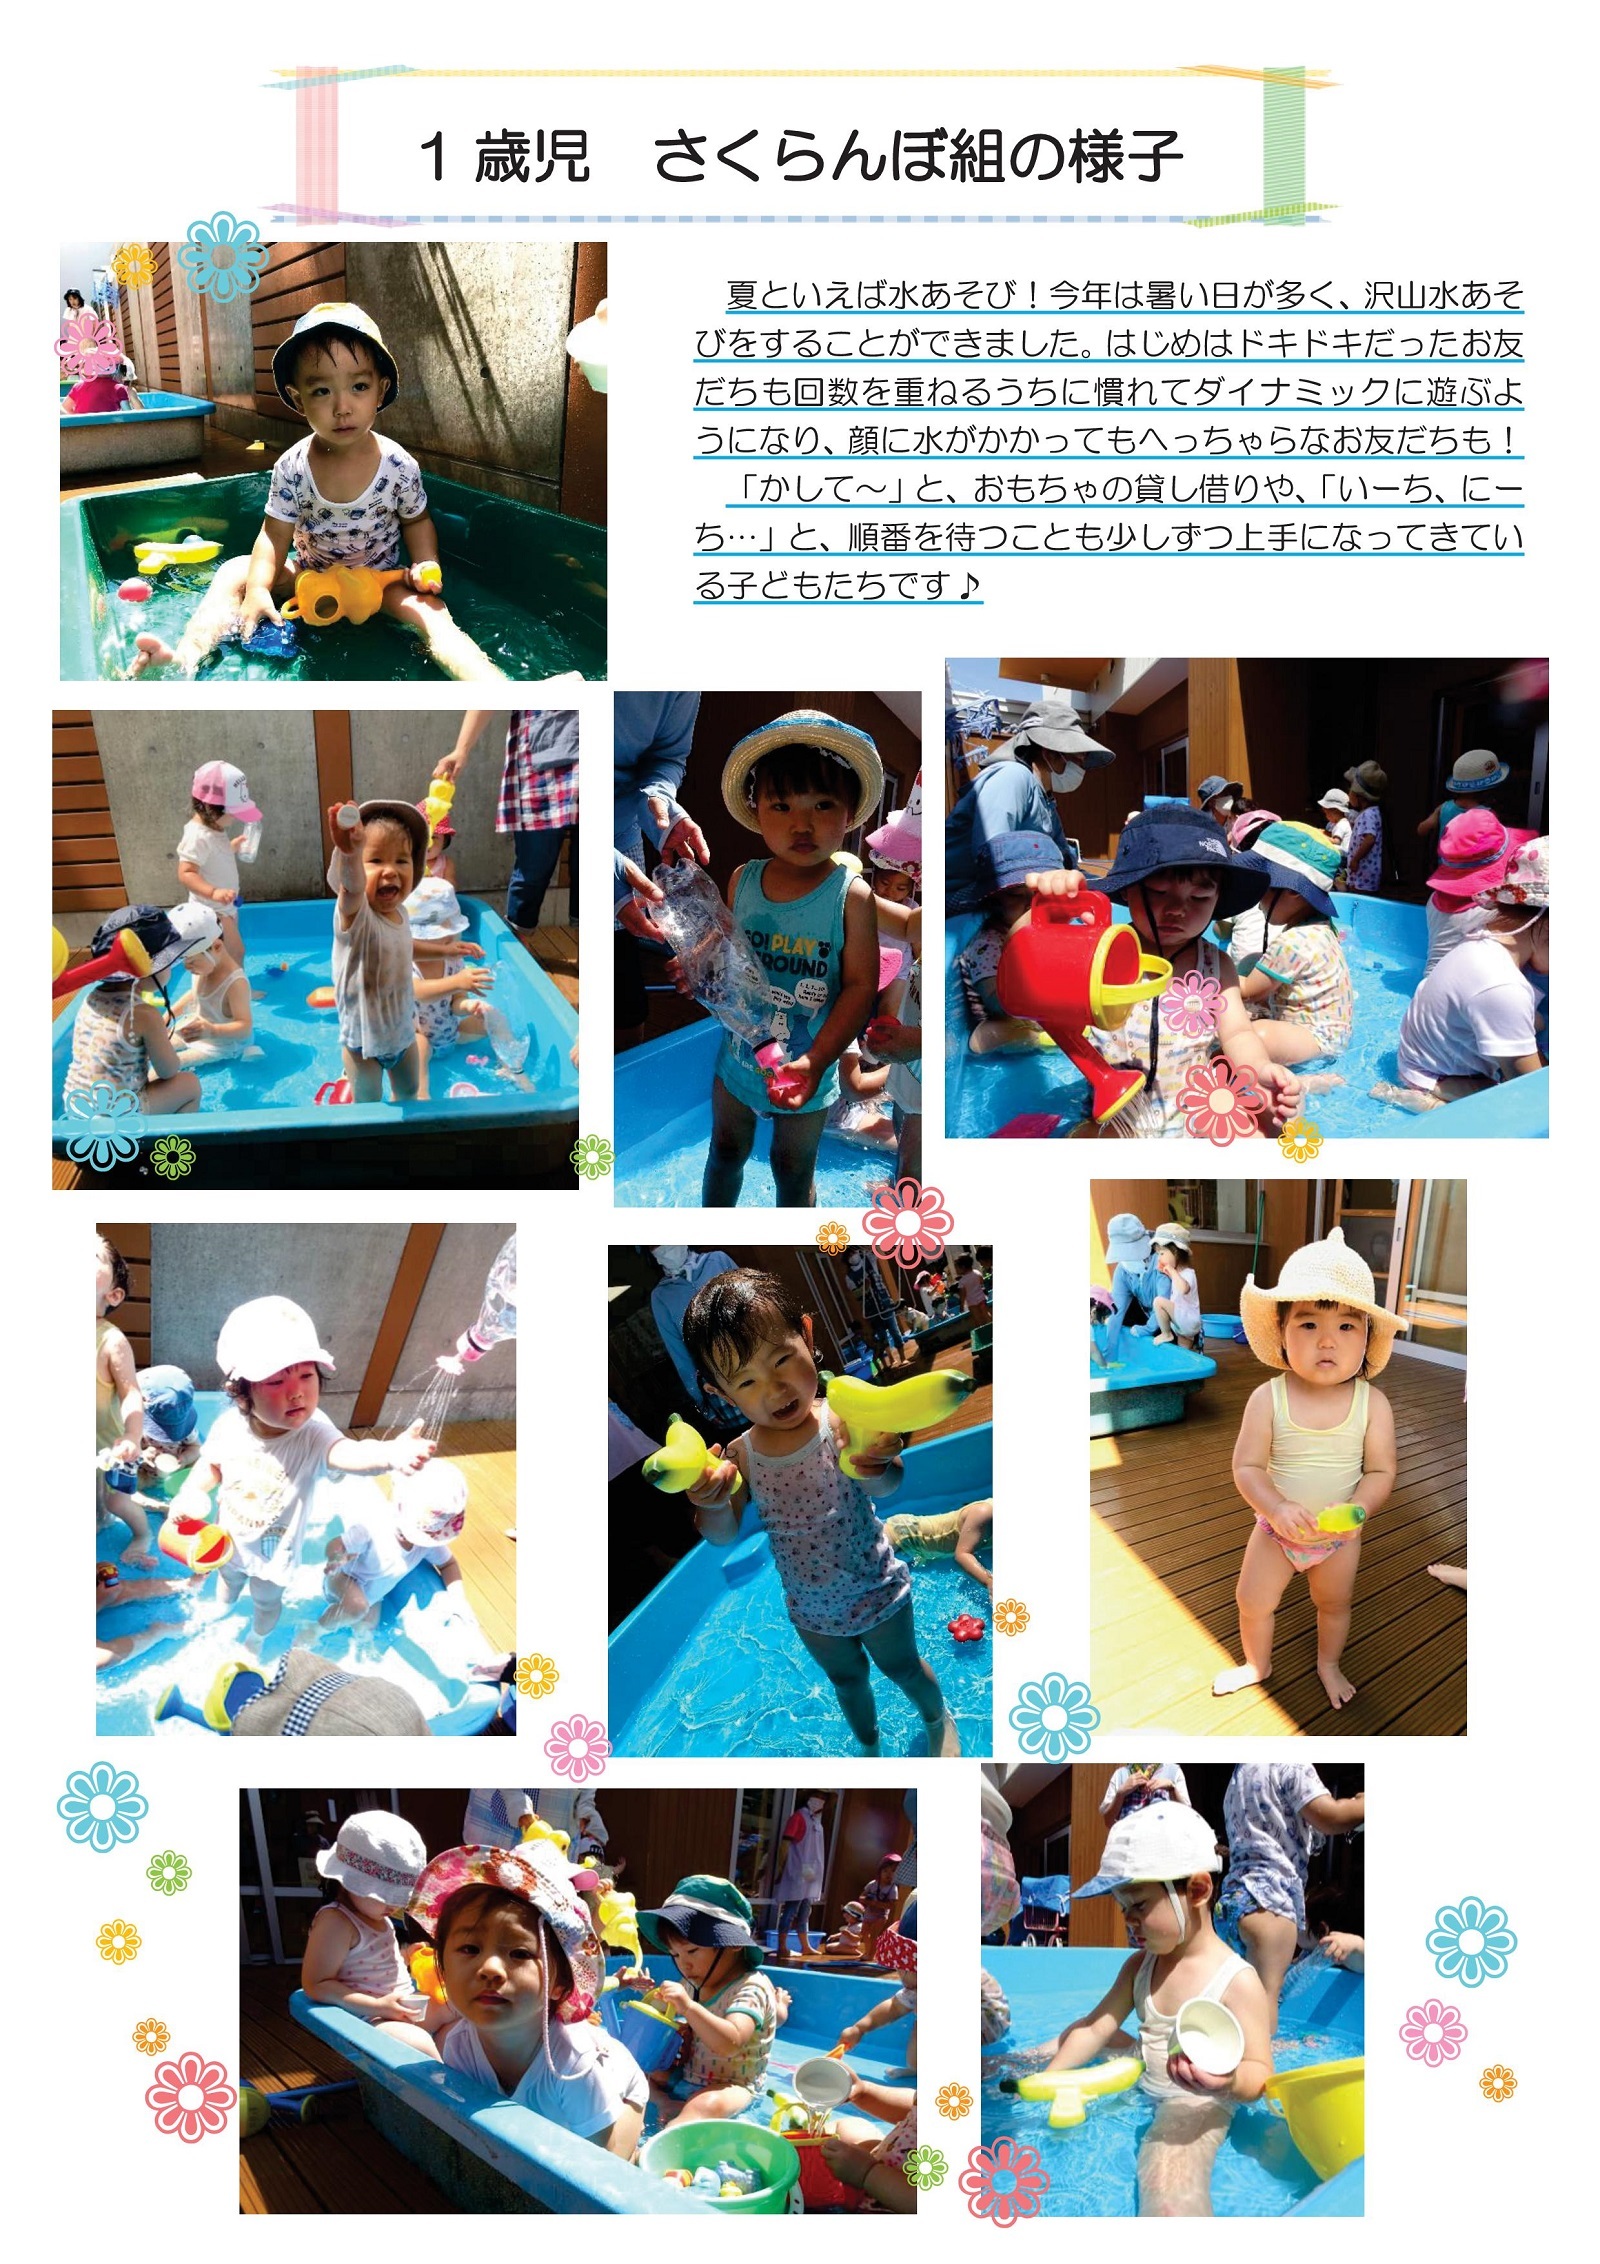 虹いろ保育所通信(1歳児さくらんぼ組の様子・令和2年夏)の画像